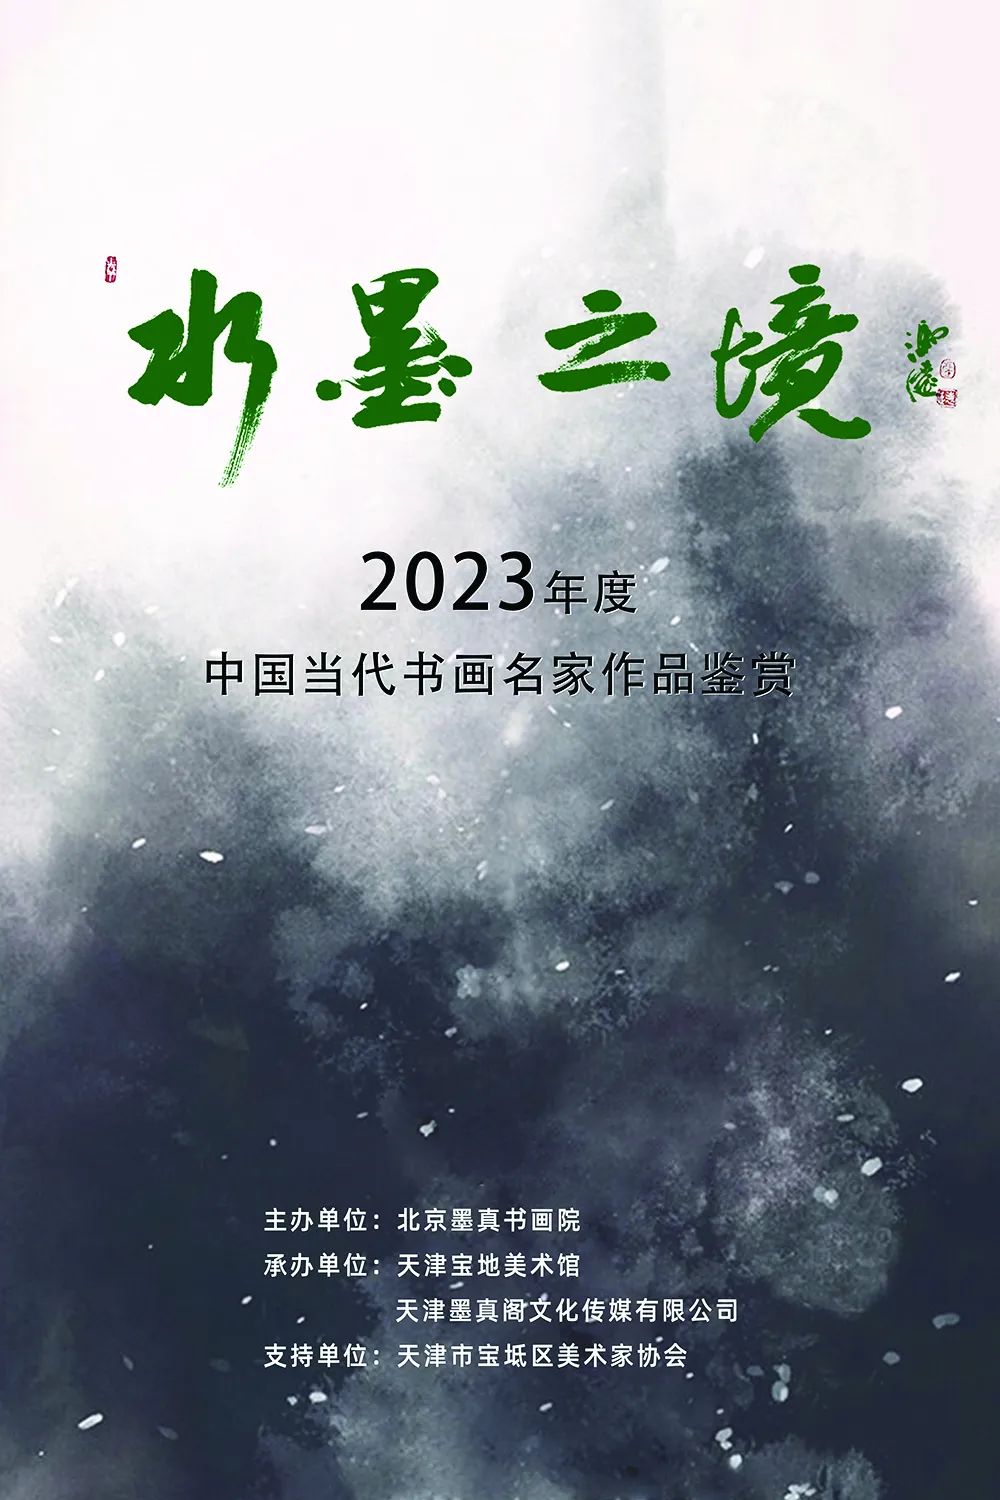 著名艺术家柯和根应邀参展“水墨之境——2023年度中国当代书画名家作品鉴赏”，分享艺术感悟